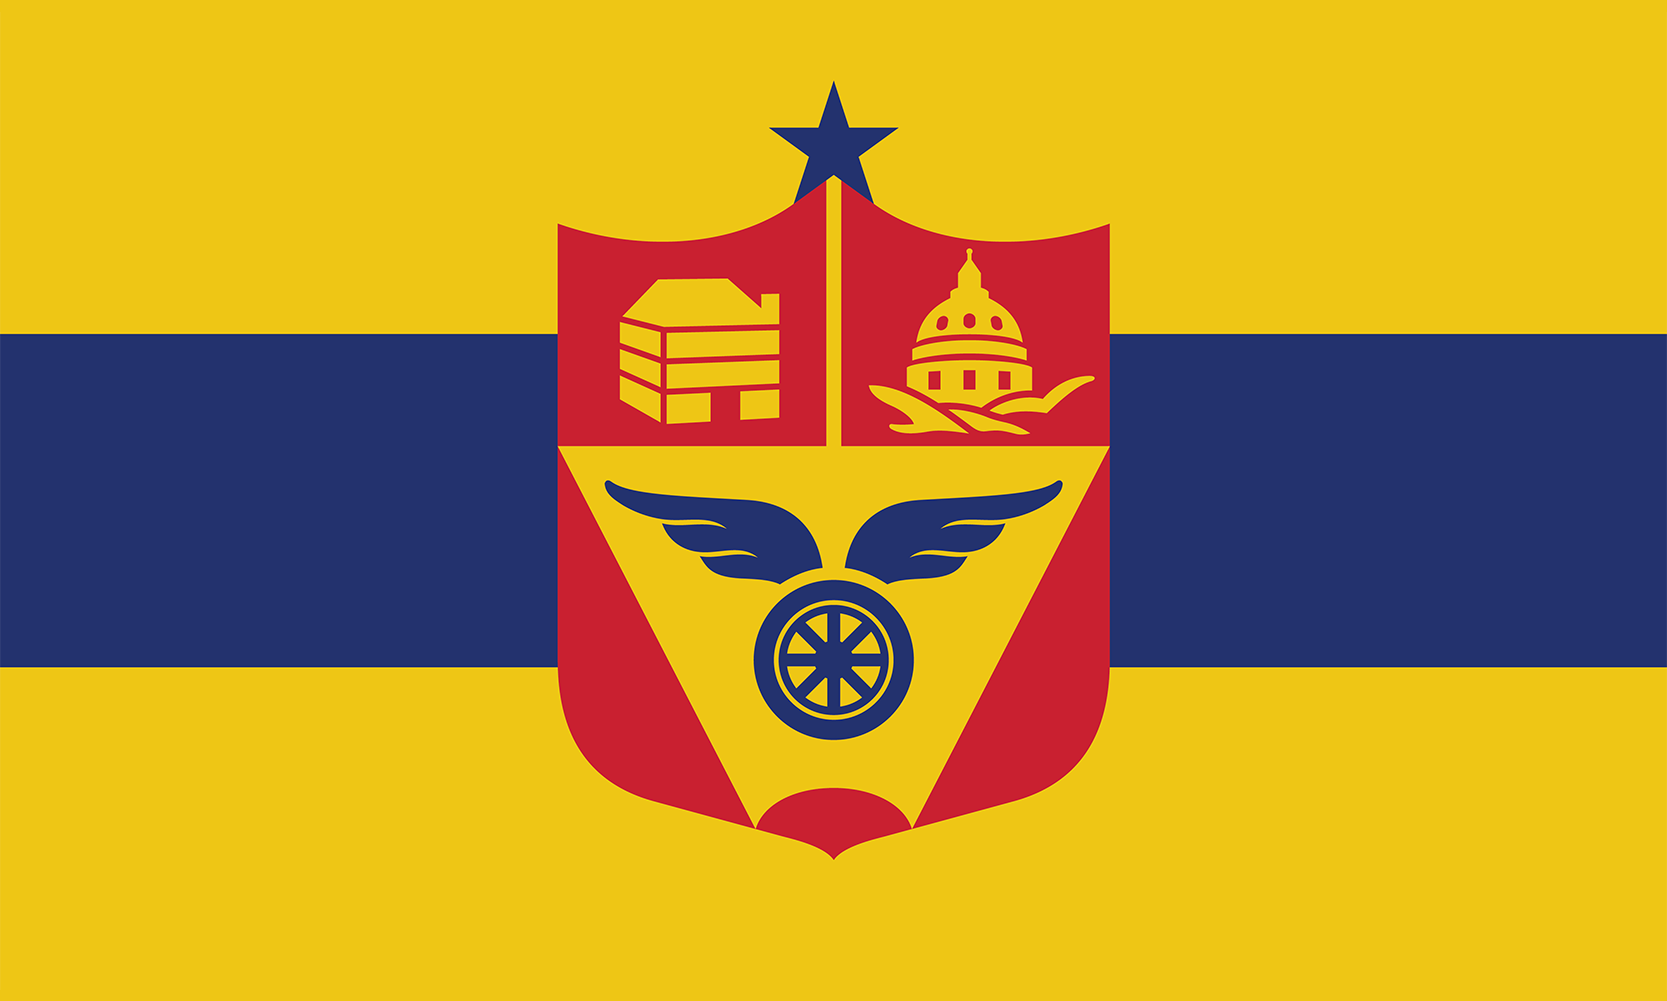 The Flag of Saint Paul